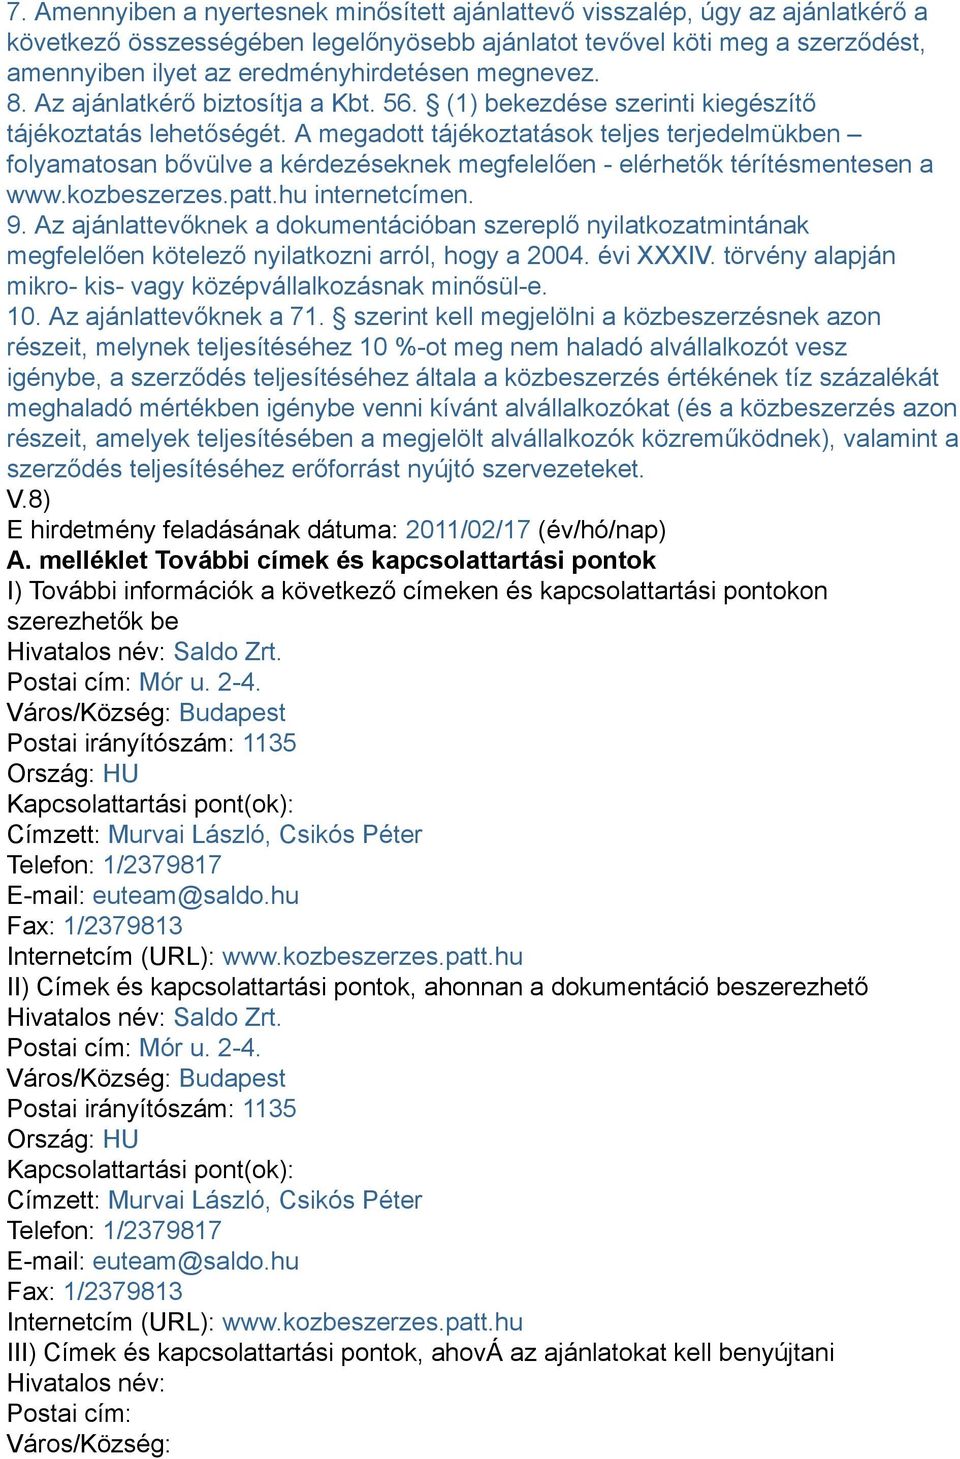 A megadott tájékoztatások teljes terjedelmükben folyamatosan bővülve a kérdezéseknek megfelelően - elérhetők térítésmentesen a www.kozbeszerzes.patt.hu internetcímen. 9.